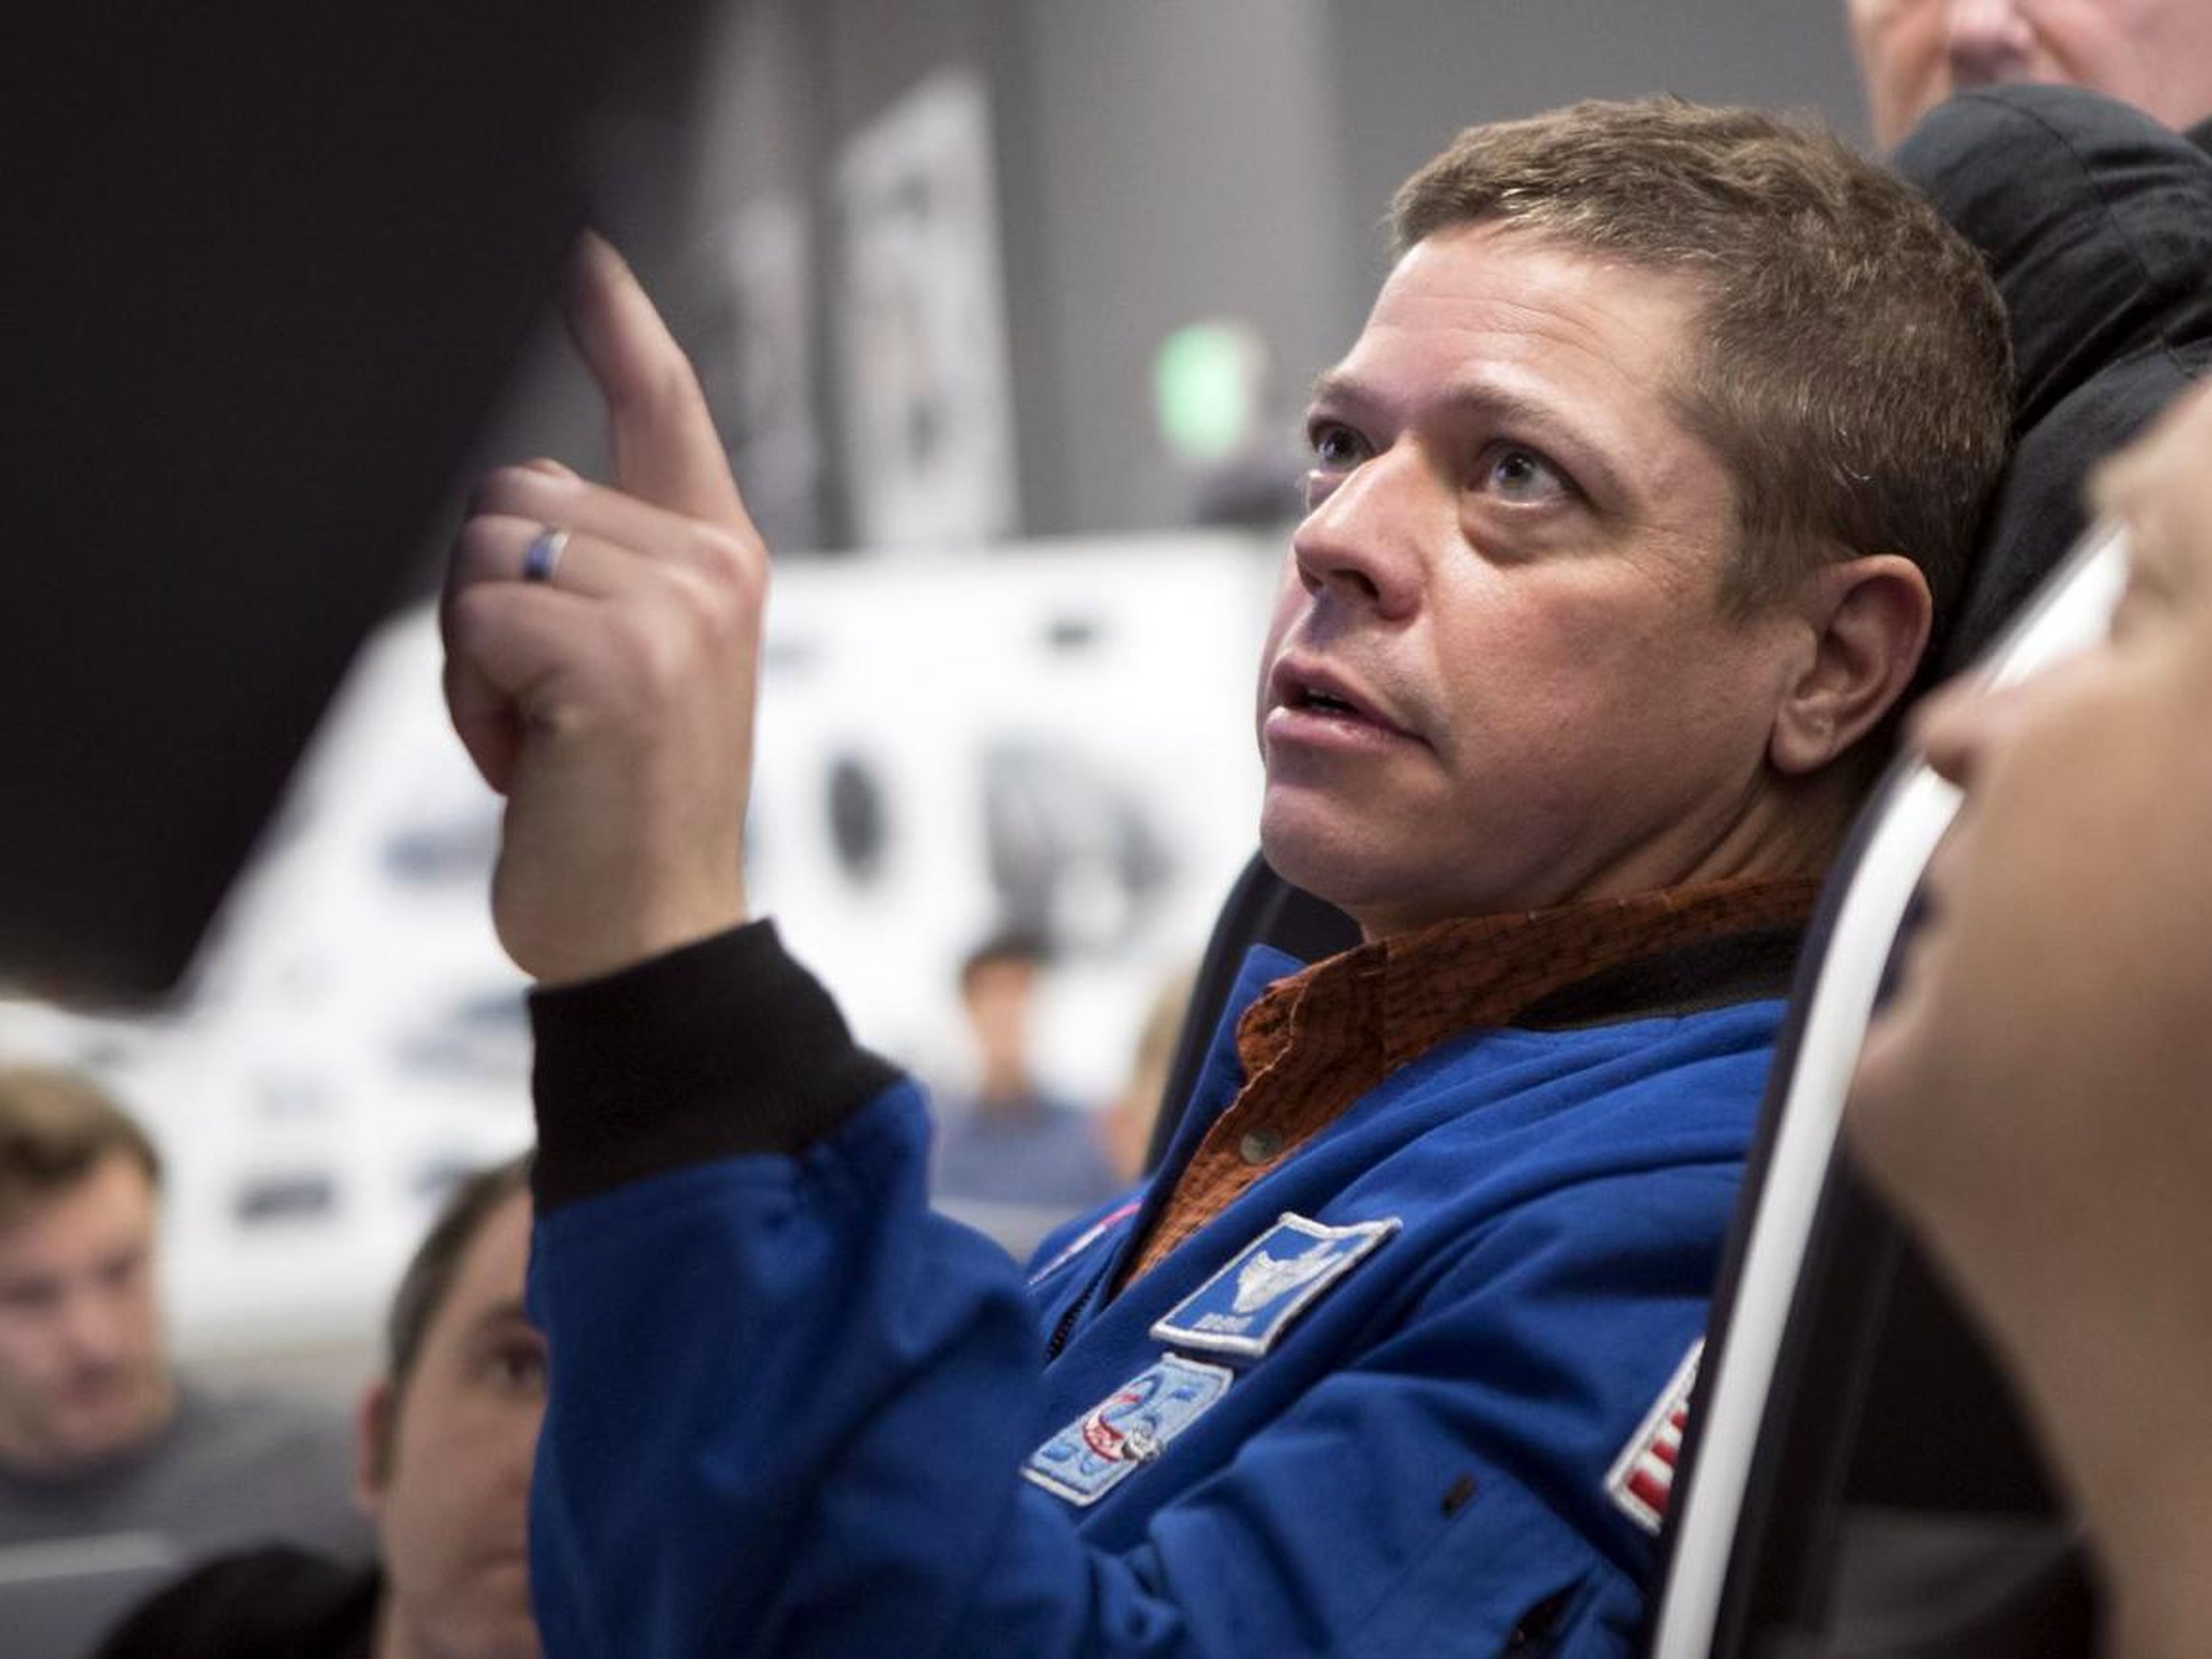 El astronauta Bob Behnken de la NASA probando la maqueta de la nave espacial Crew Dragon de SpaceX.